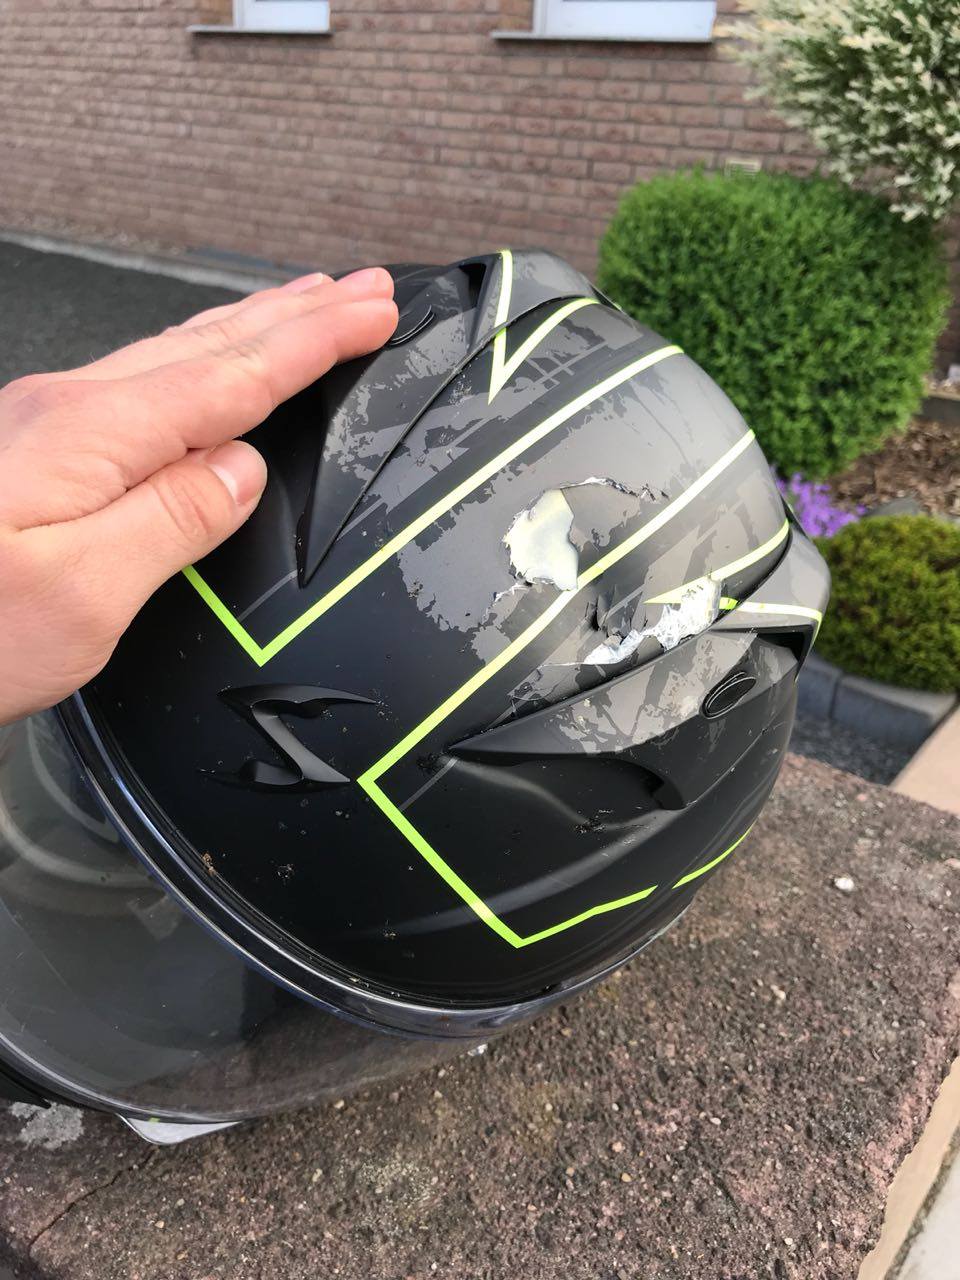 Krücke auf Motorradfahrer geworfen Zerbrochener Helm Motorcycles News